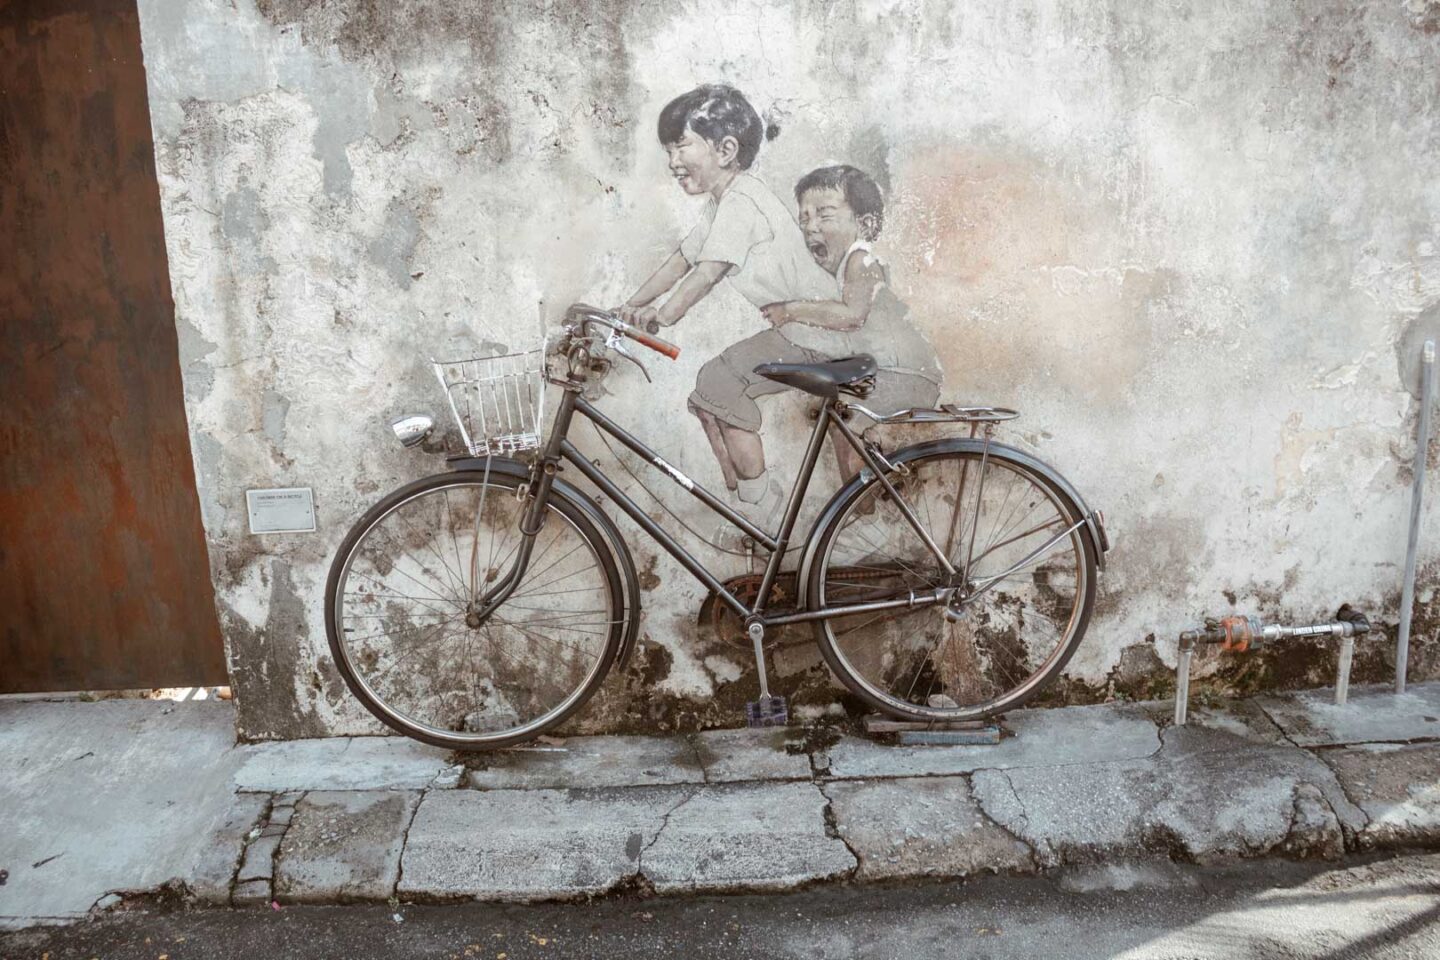 street art in George Town, Malaysia